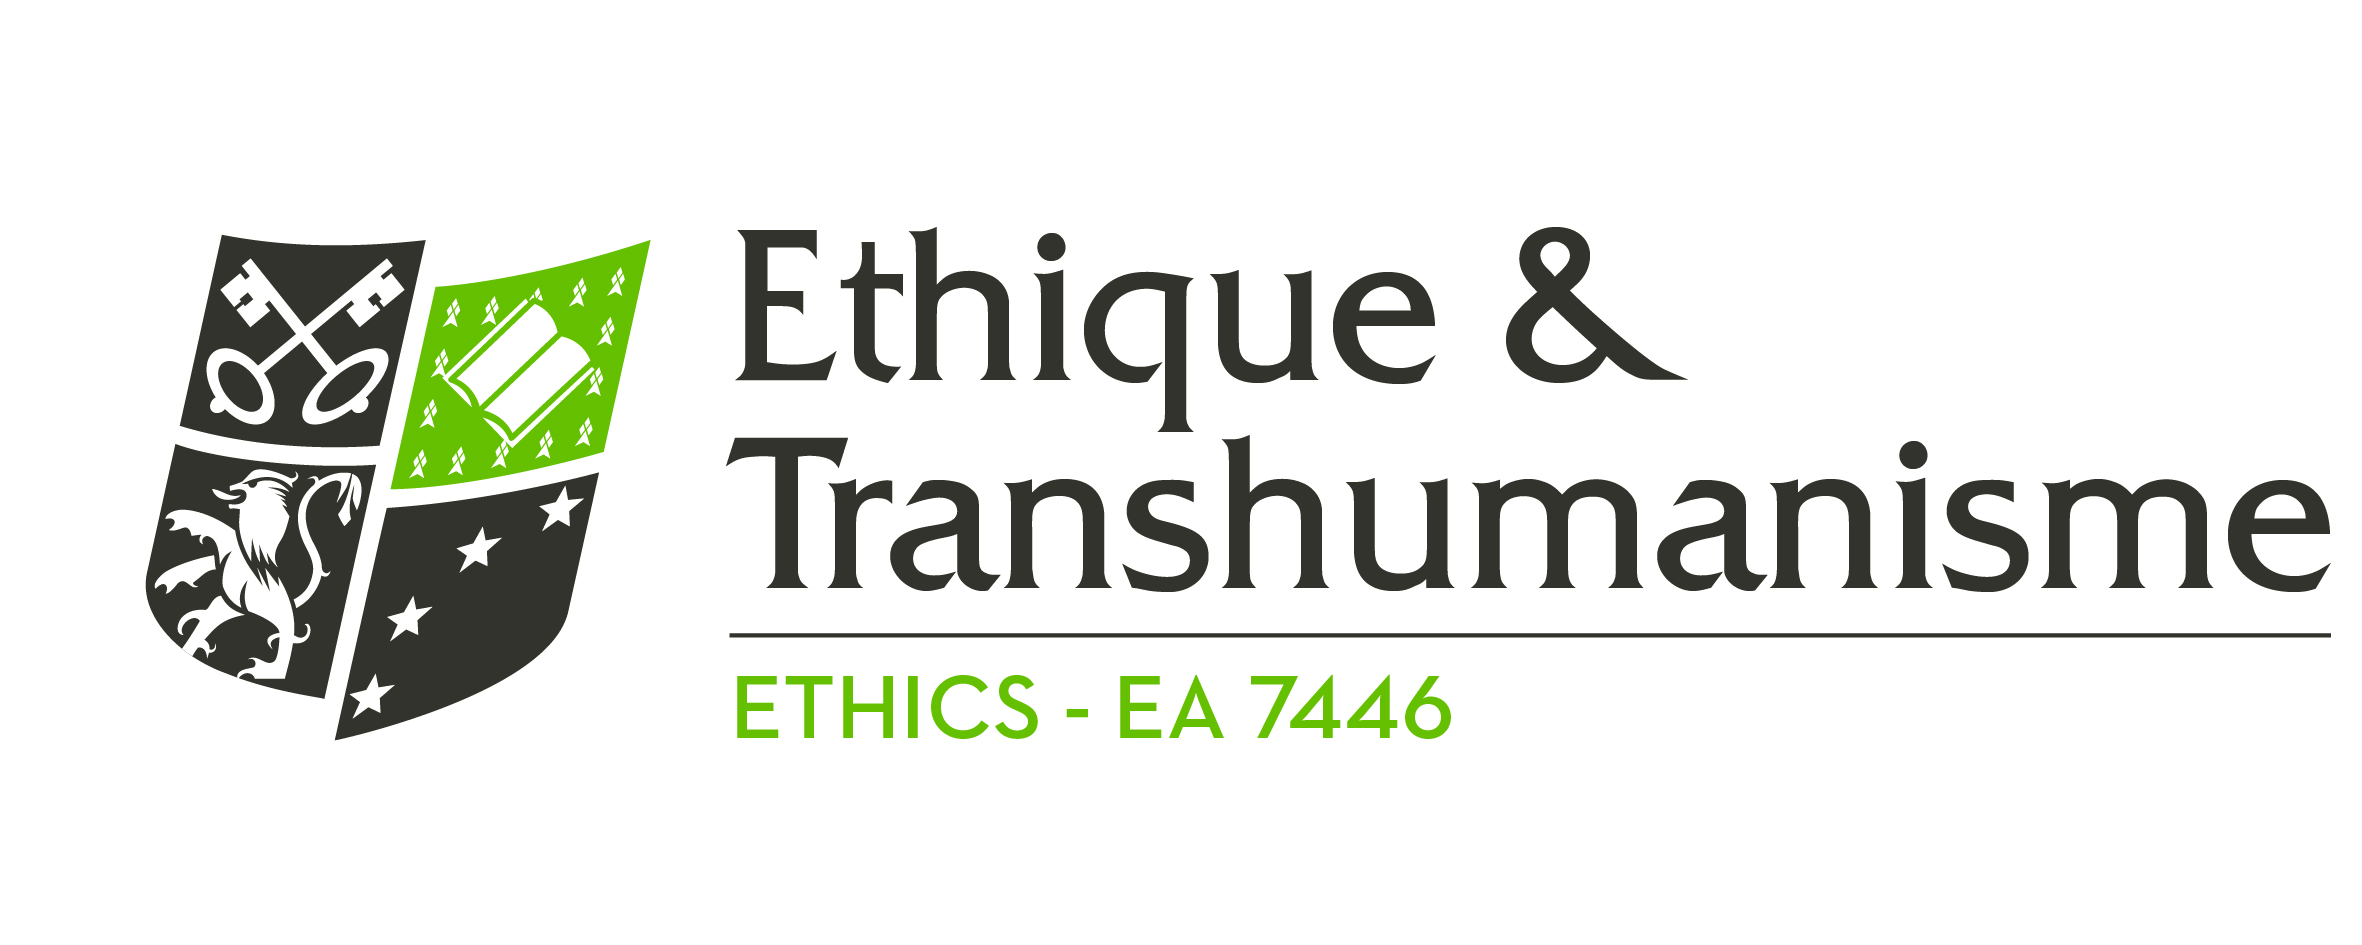 Ethique et transhumanisme